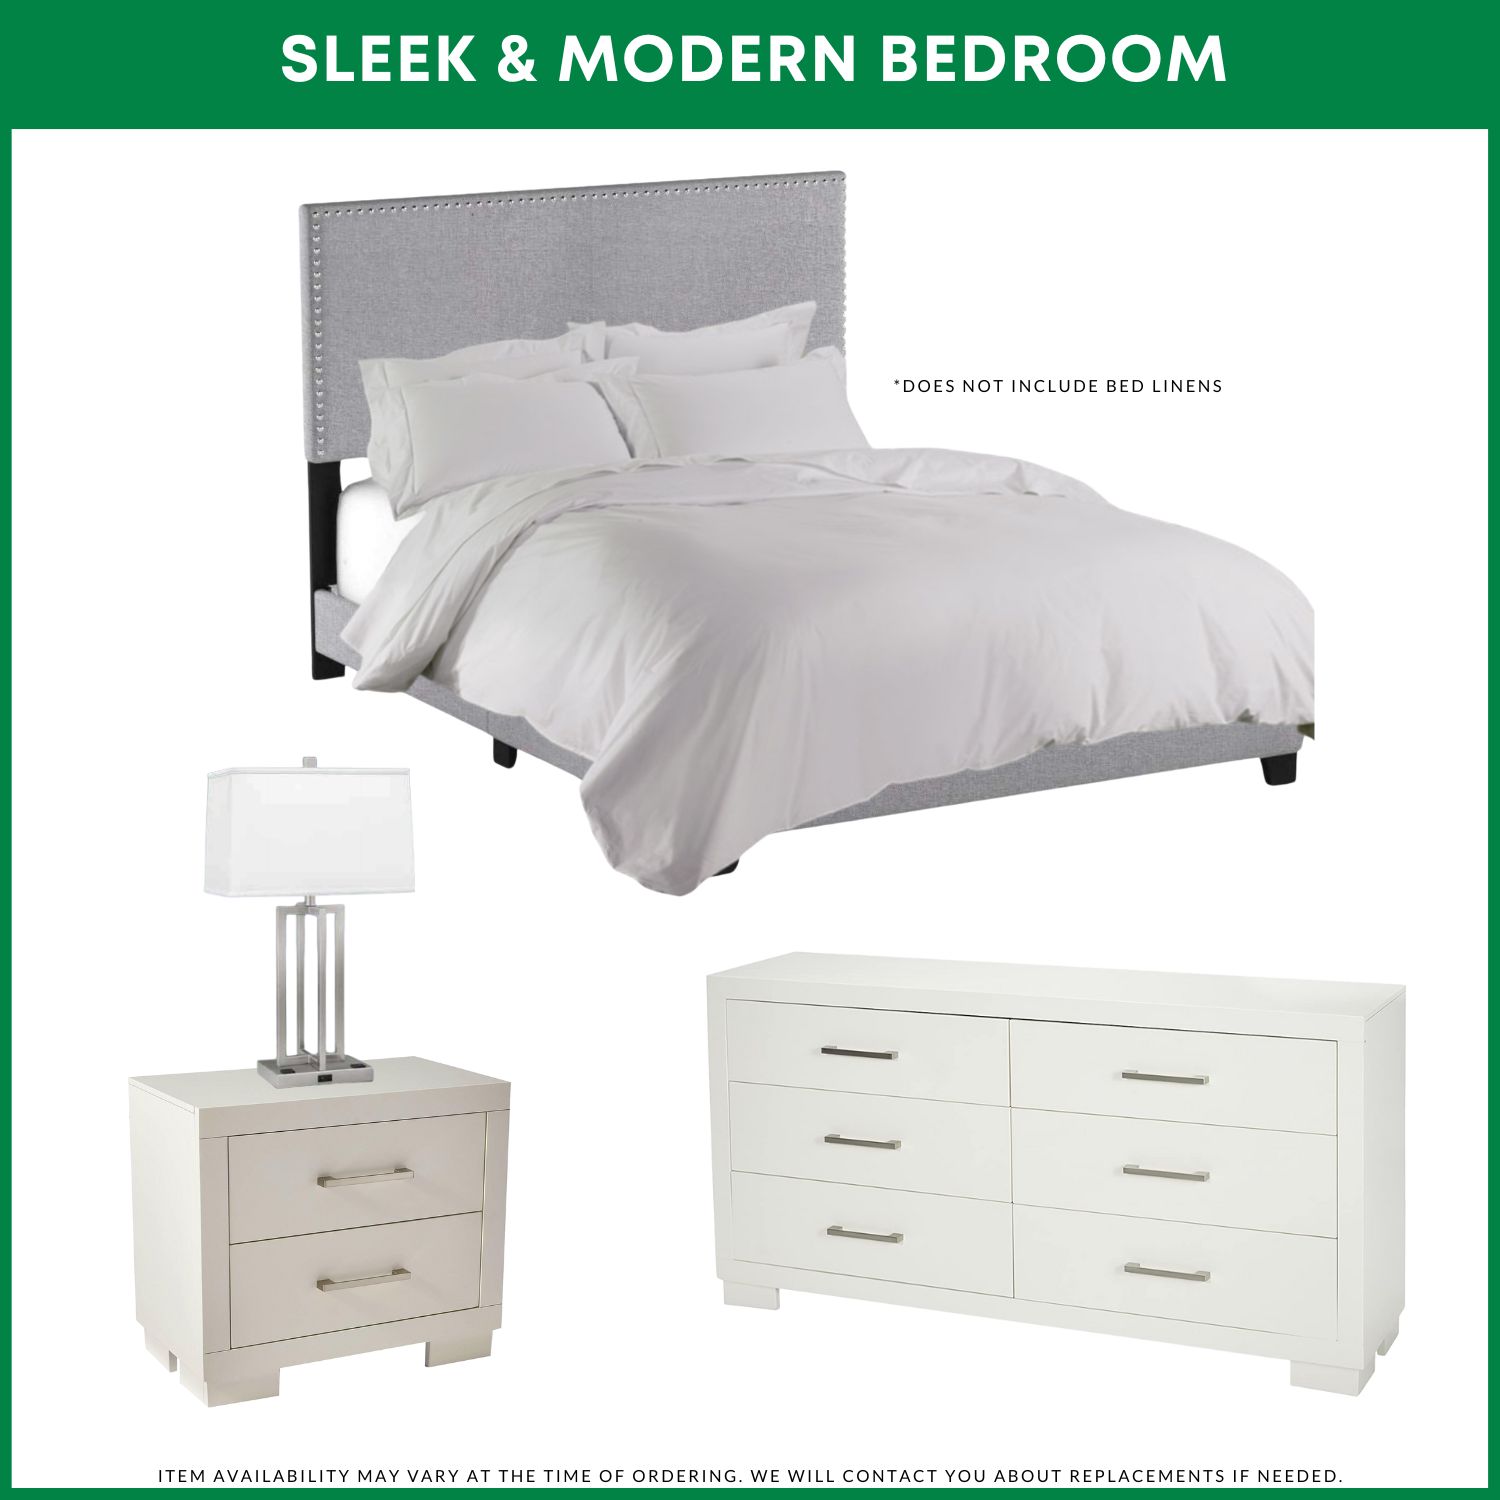 Sleek & Modern Bedroom